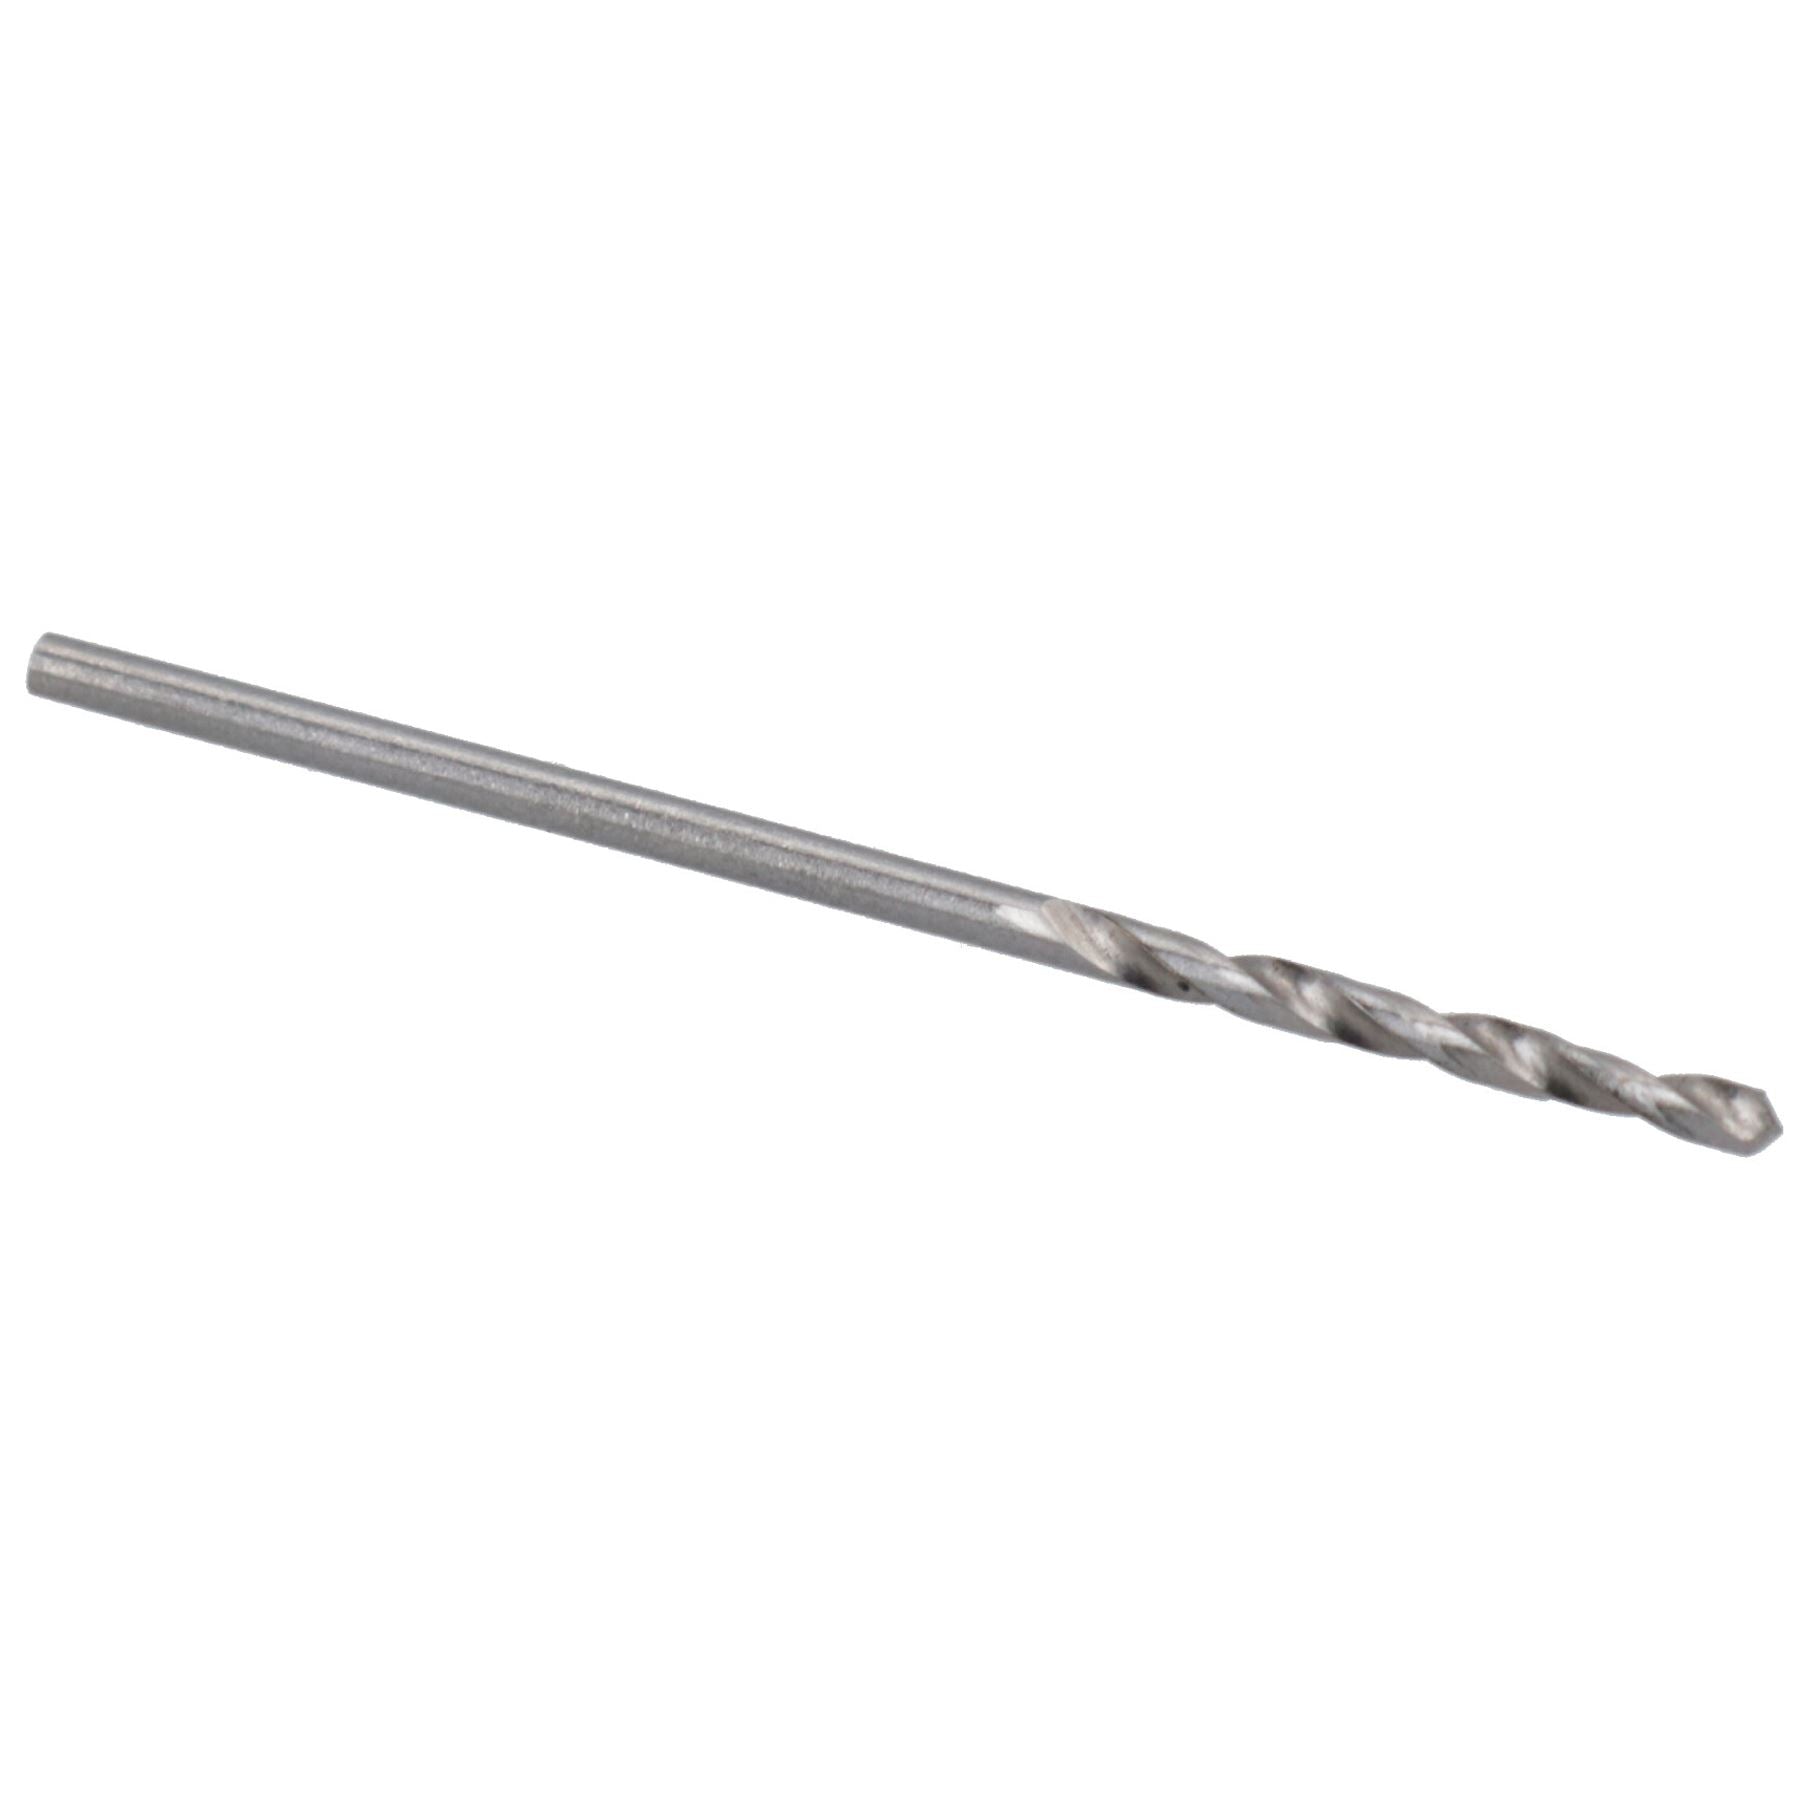 HSS-G Metric MM Drill Bits for Drilling Metal Iron Wood Plastics 1mm – 12.5mm